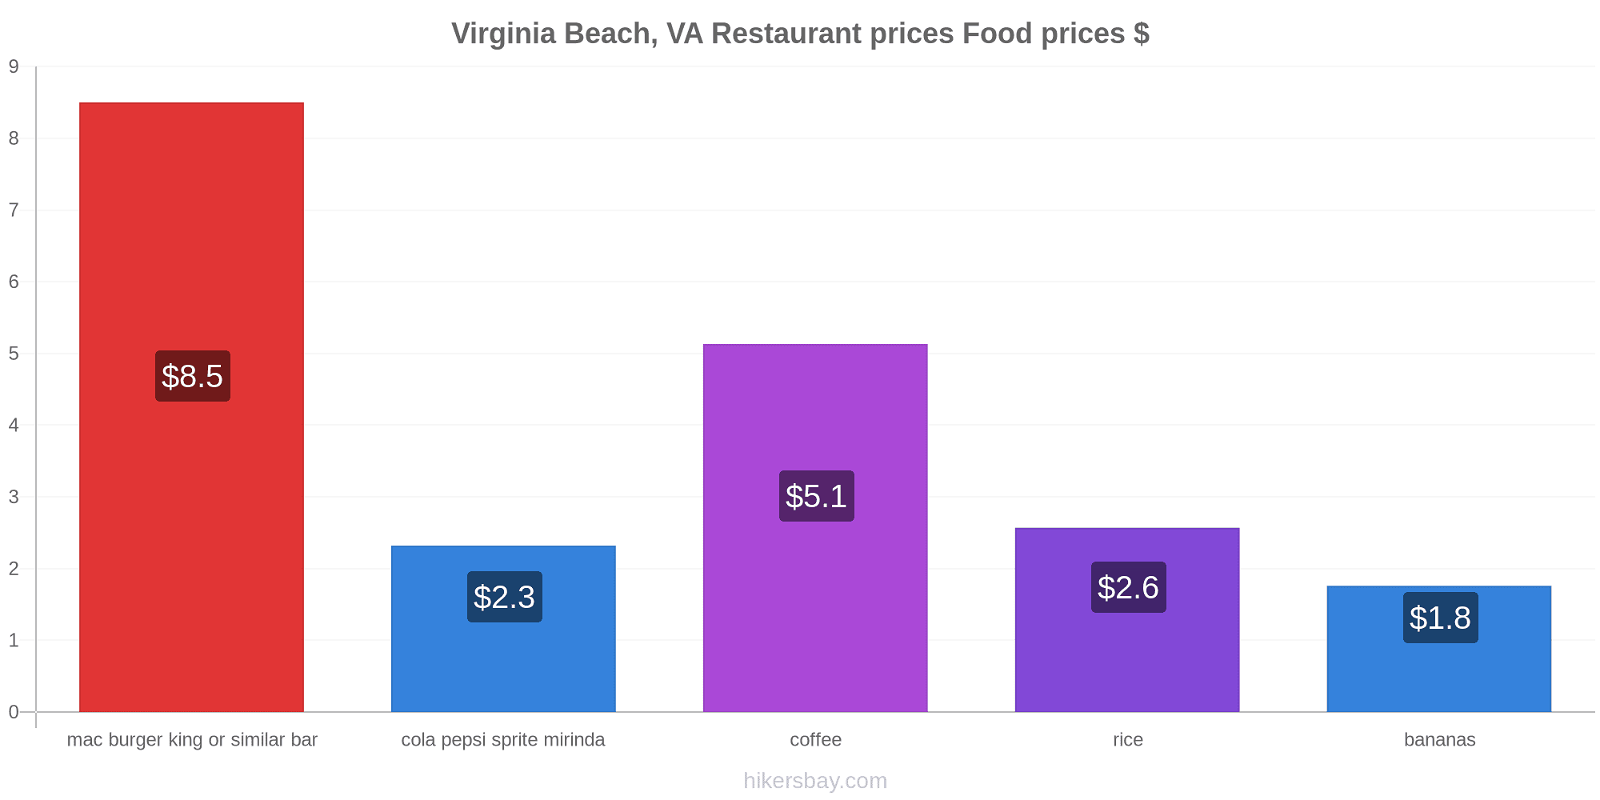 Virginia Beach, VA price changes hikersbay.com